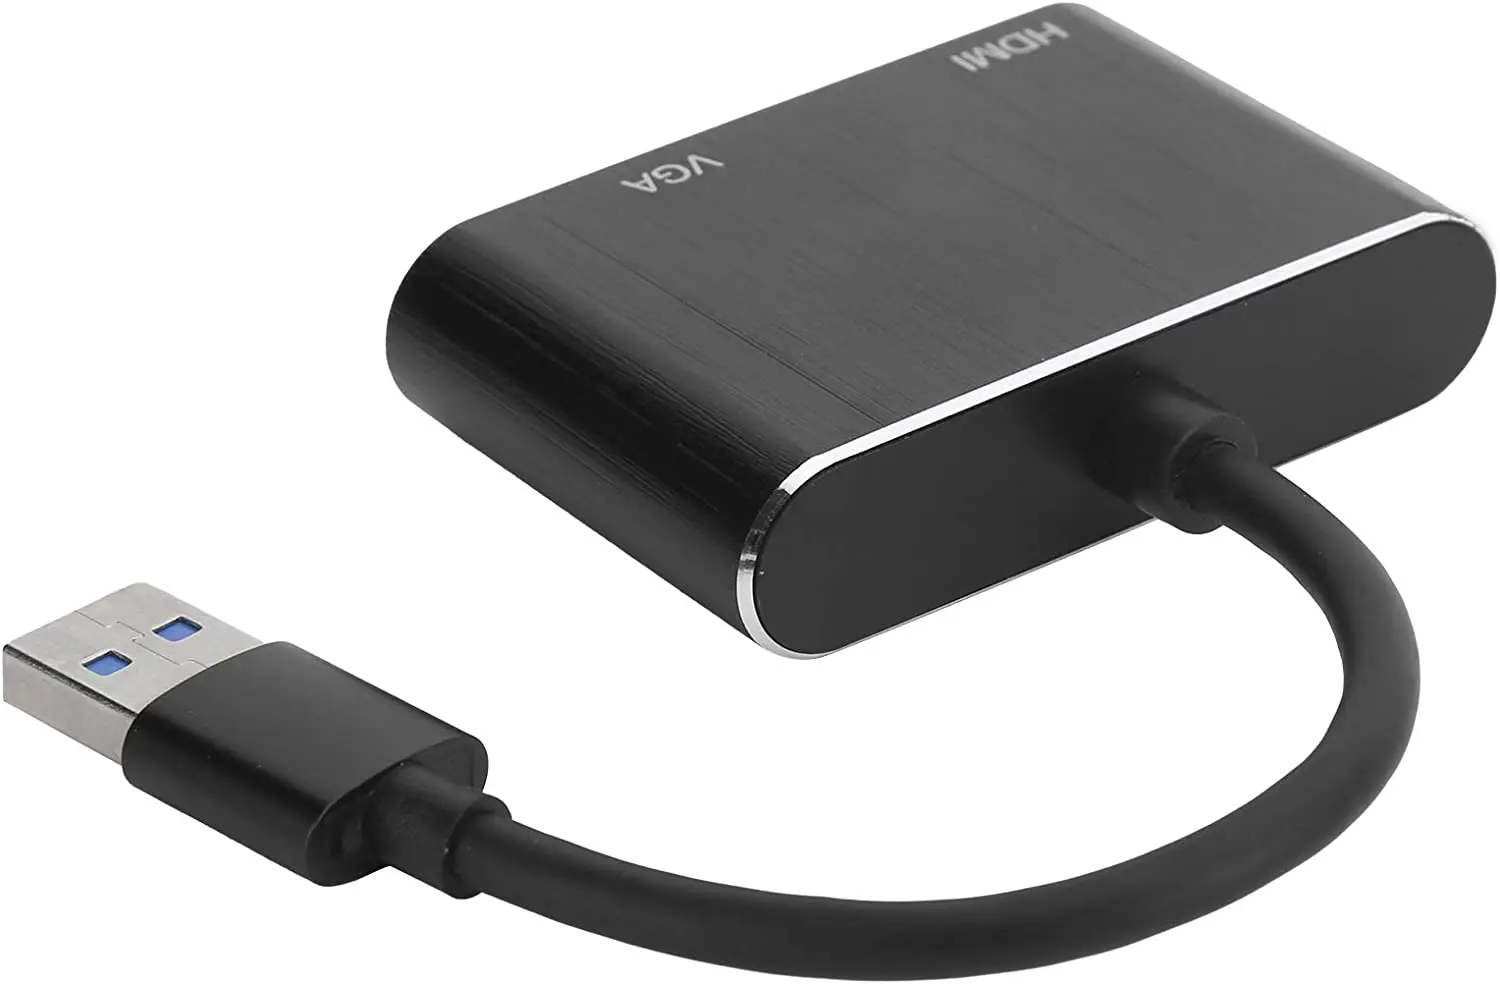 

Adaptador VGA, USB3.0 para adaptador VGA/HDMI 5 Gbps Super-velocidade USB 3.0 Interface HDMI e VGA portas fêmeas 1920 x 1080p p